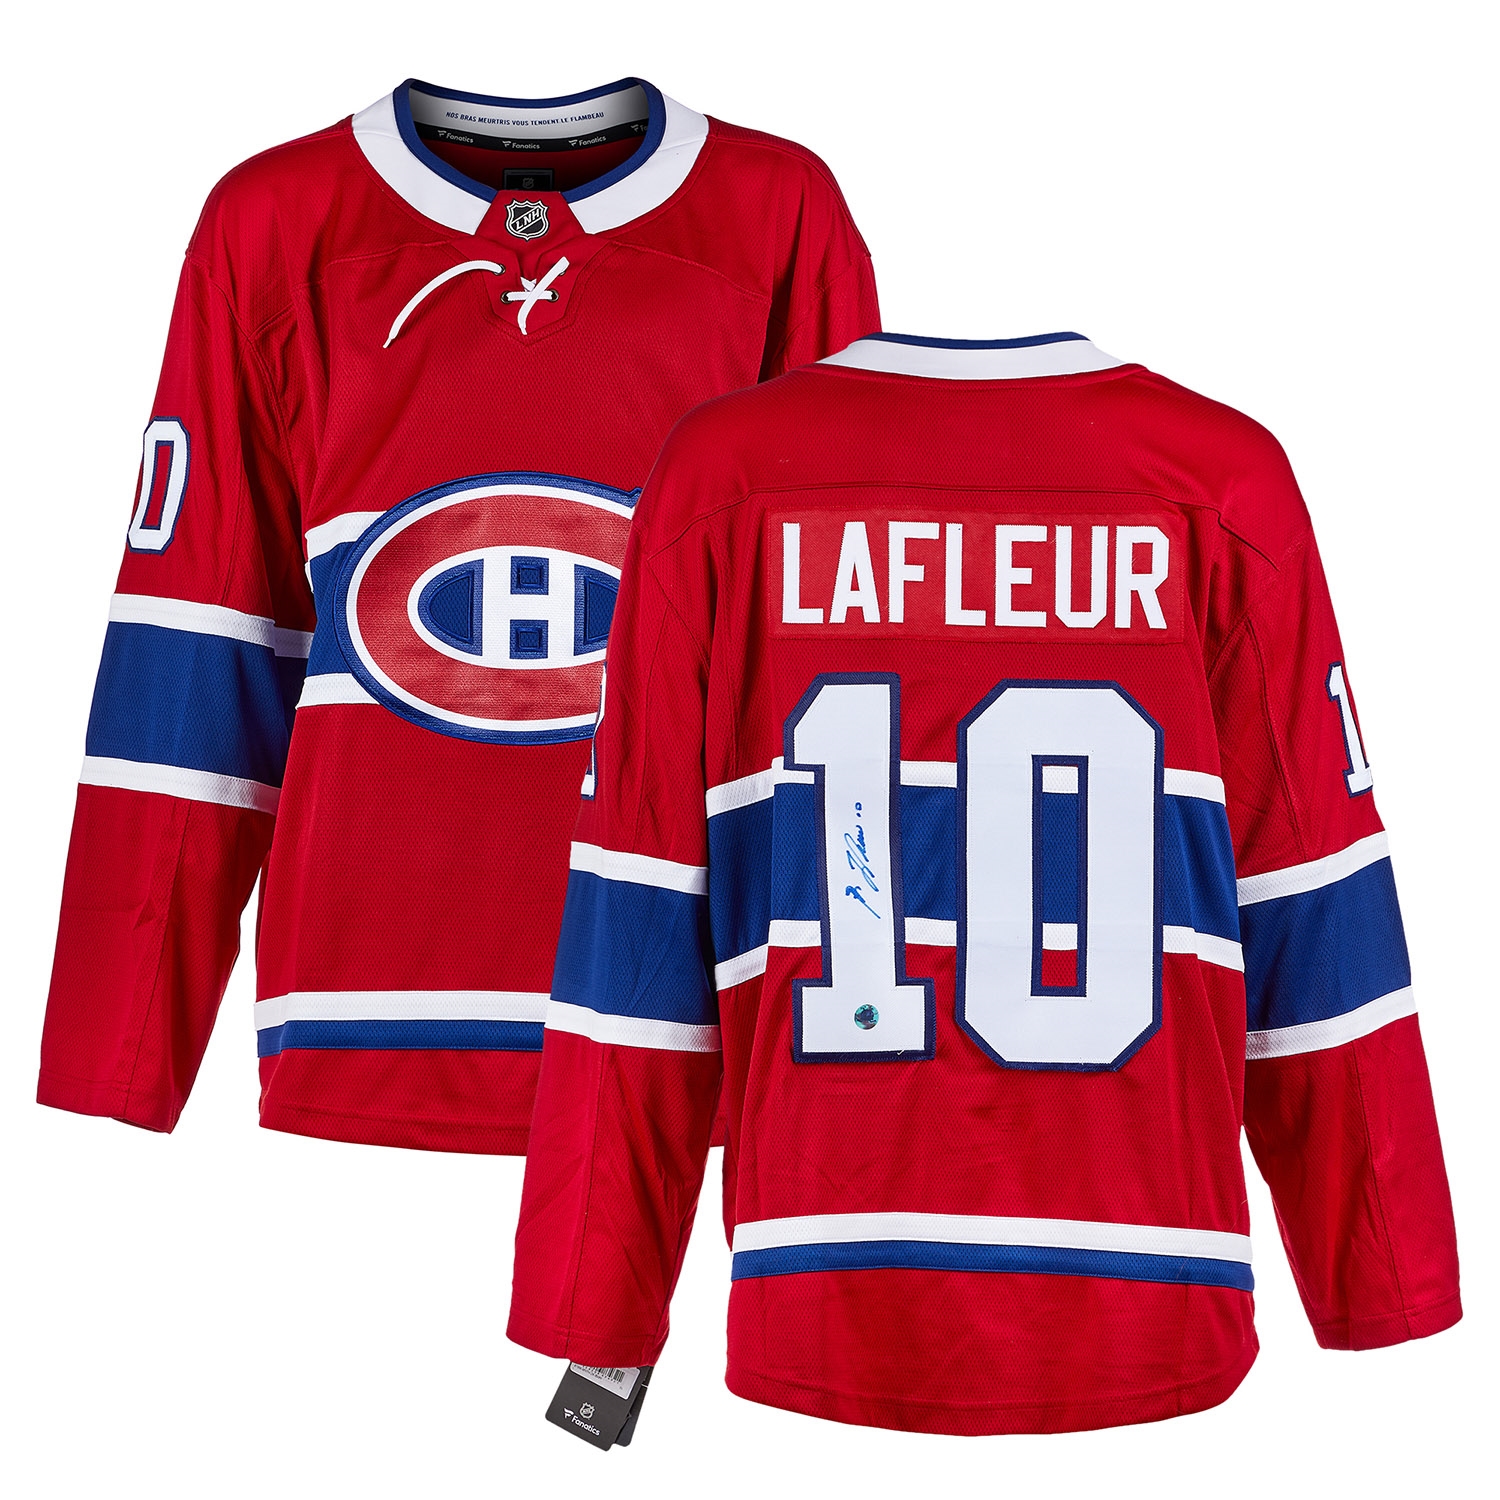 Guy Lafleur Montreal Canadiens Autographed Fanatics Jersey